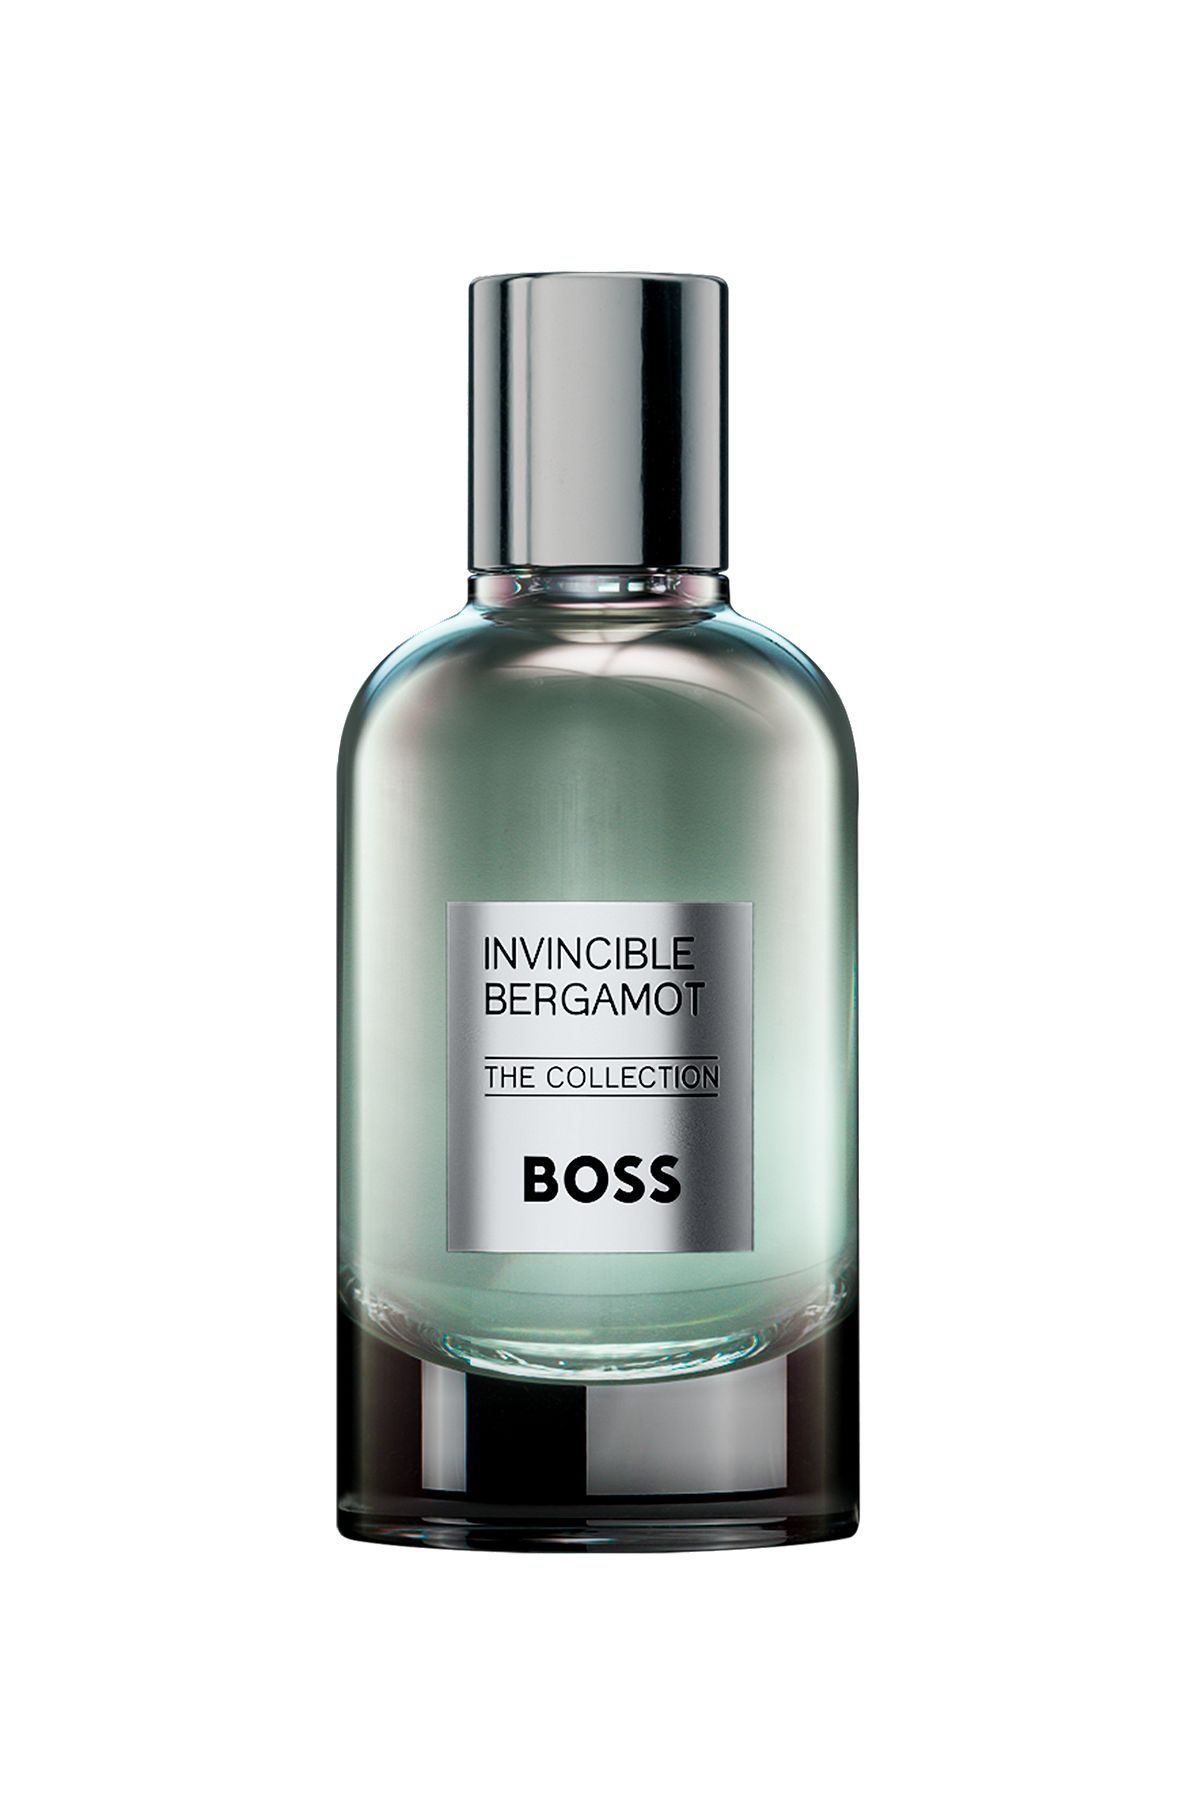 BOSS The Collection Invincible Bergamot eau de parfum 100ml, Assorted-Pre-Pack